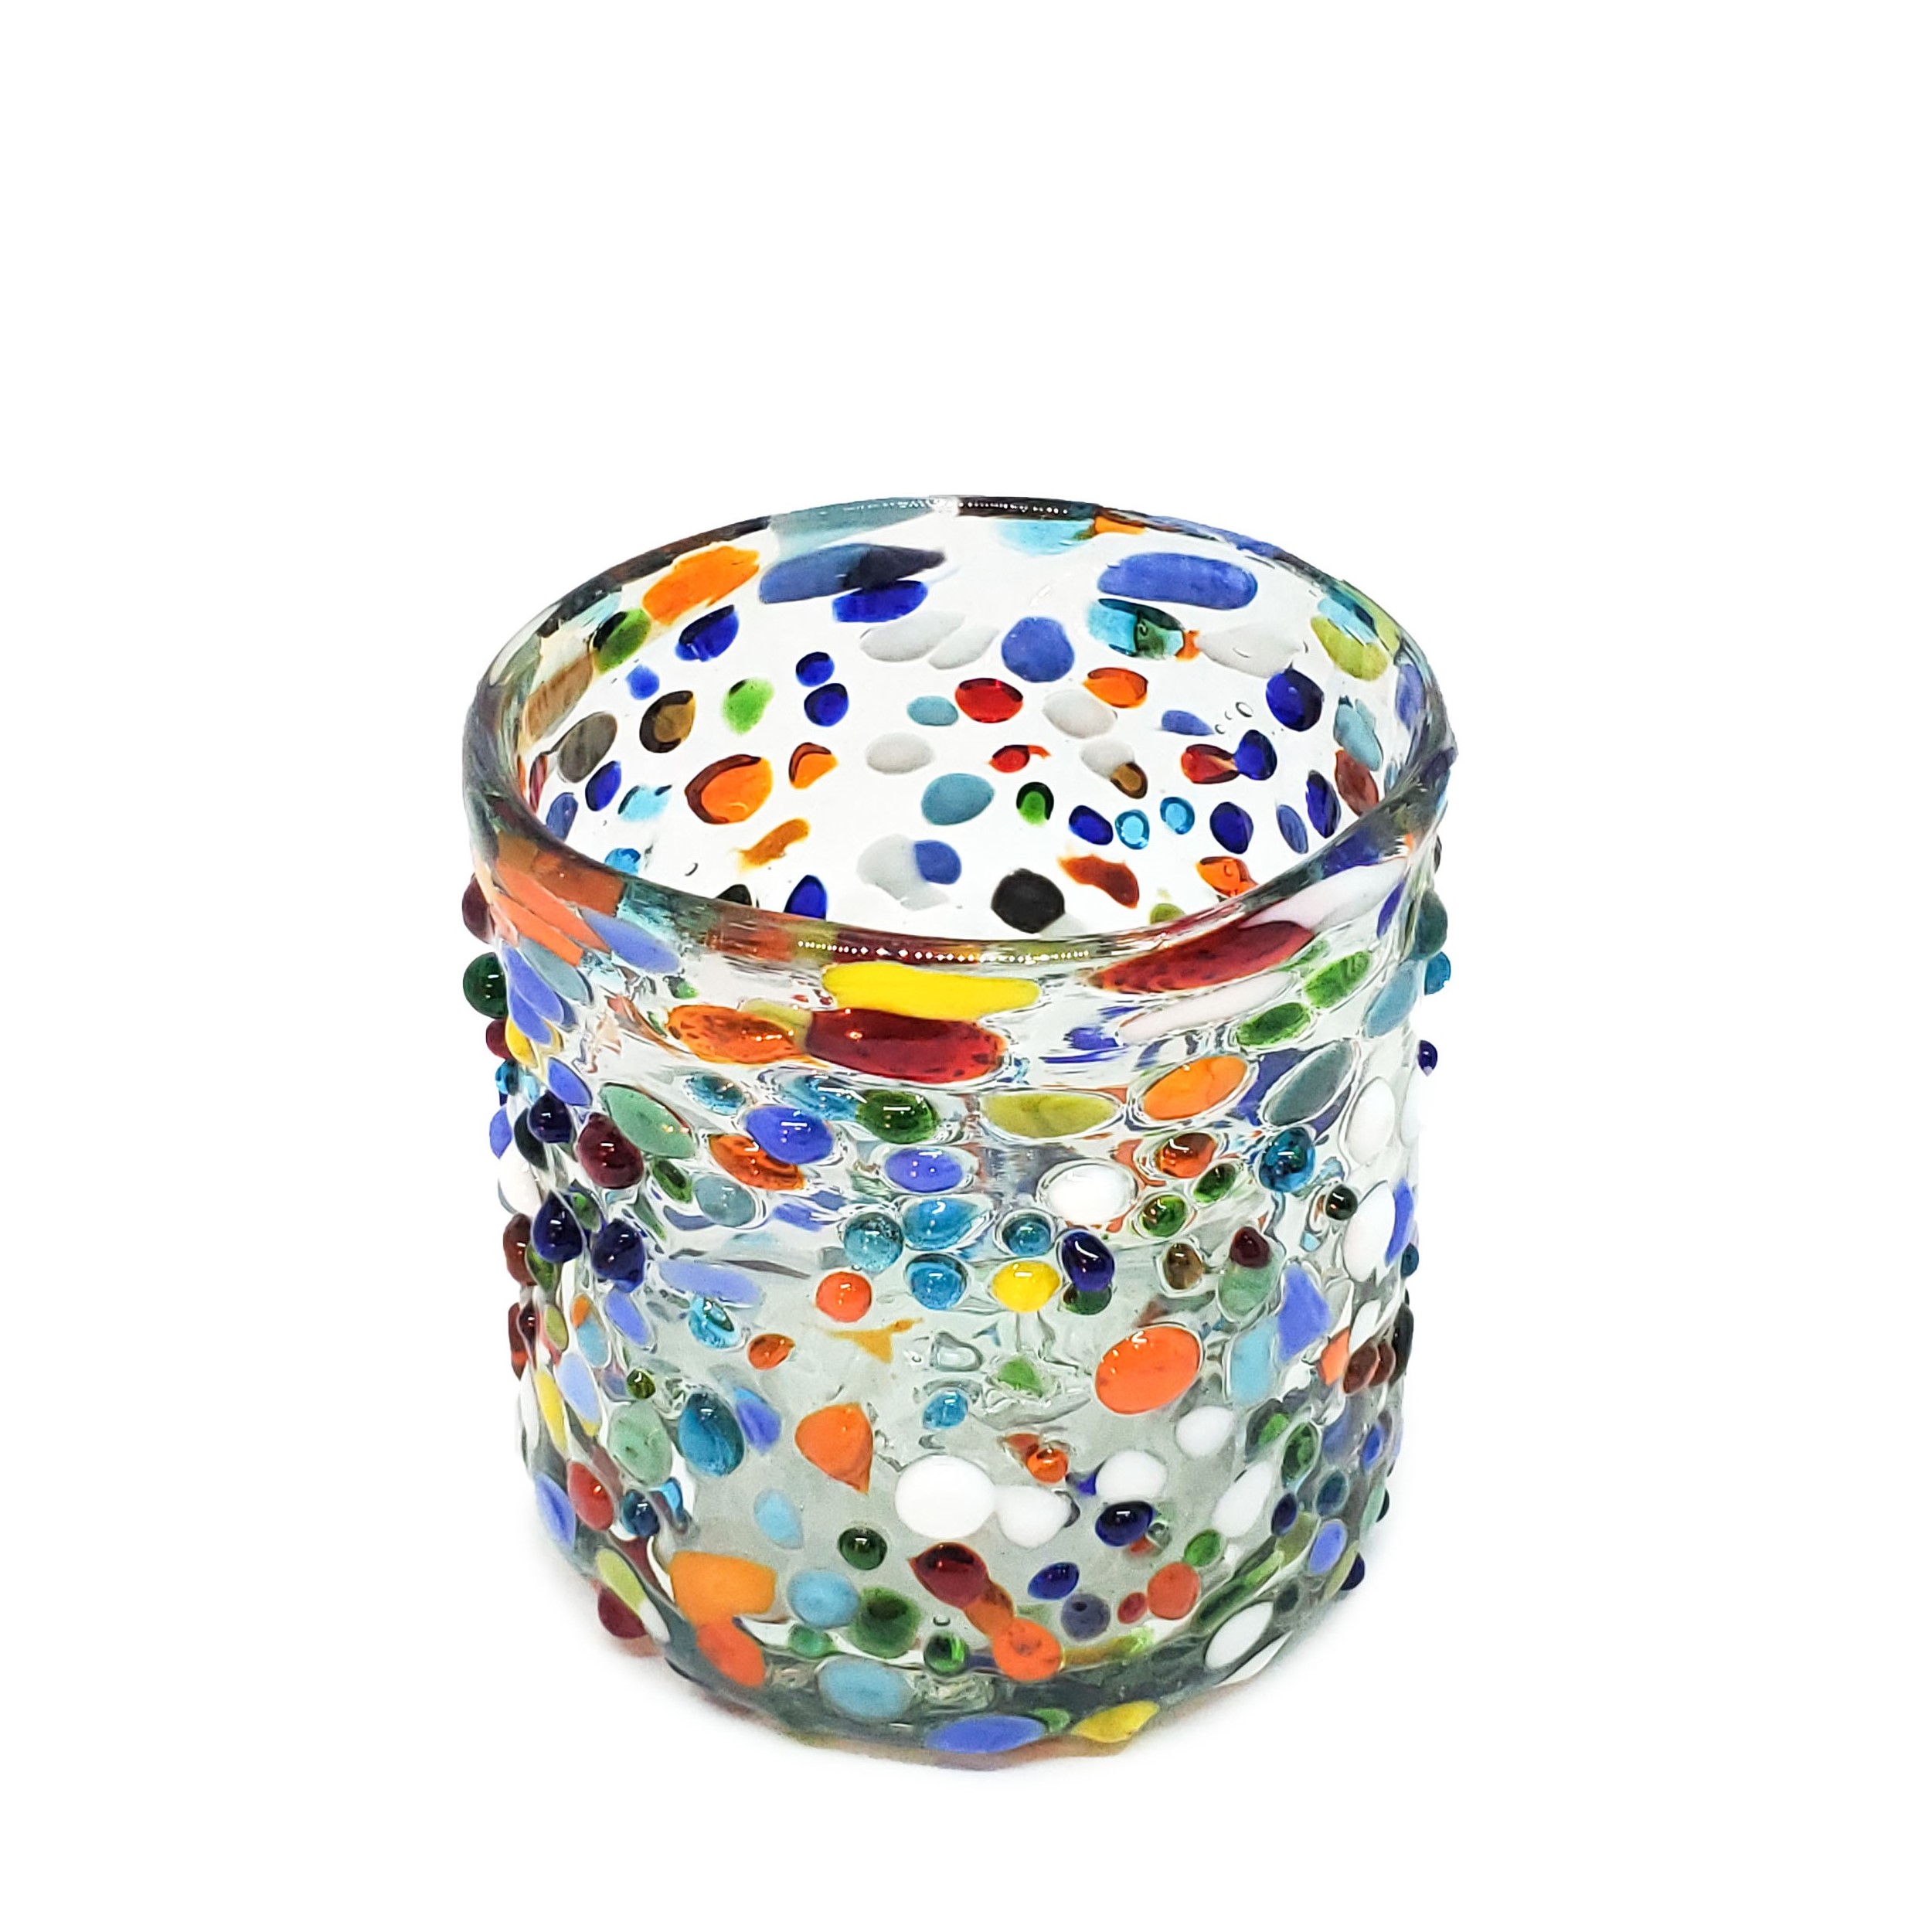 Novedades / Juego de 6 vasos DOF 8oz Confeti granizado / Deje entrar a la primavera en su casa con éste colorido juego de vasos. El decorado con vidrio multicolor los hace resaltar en cualquier lugar.